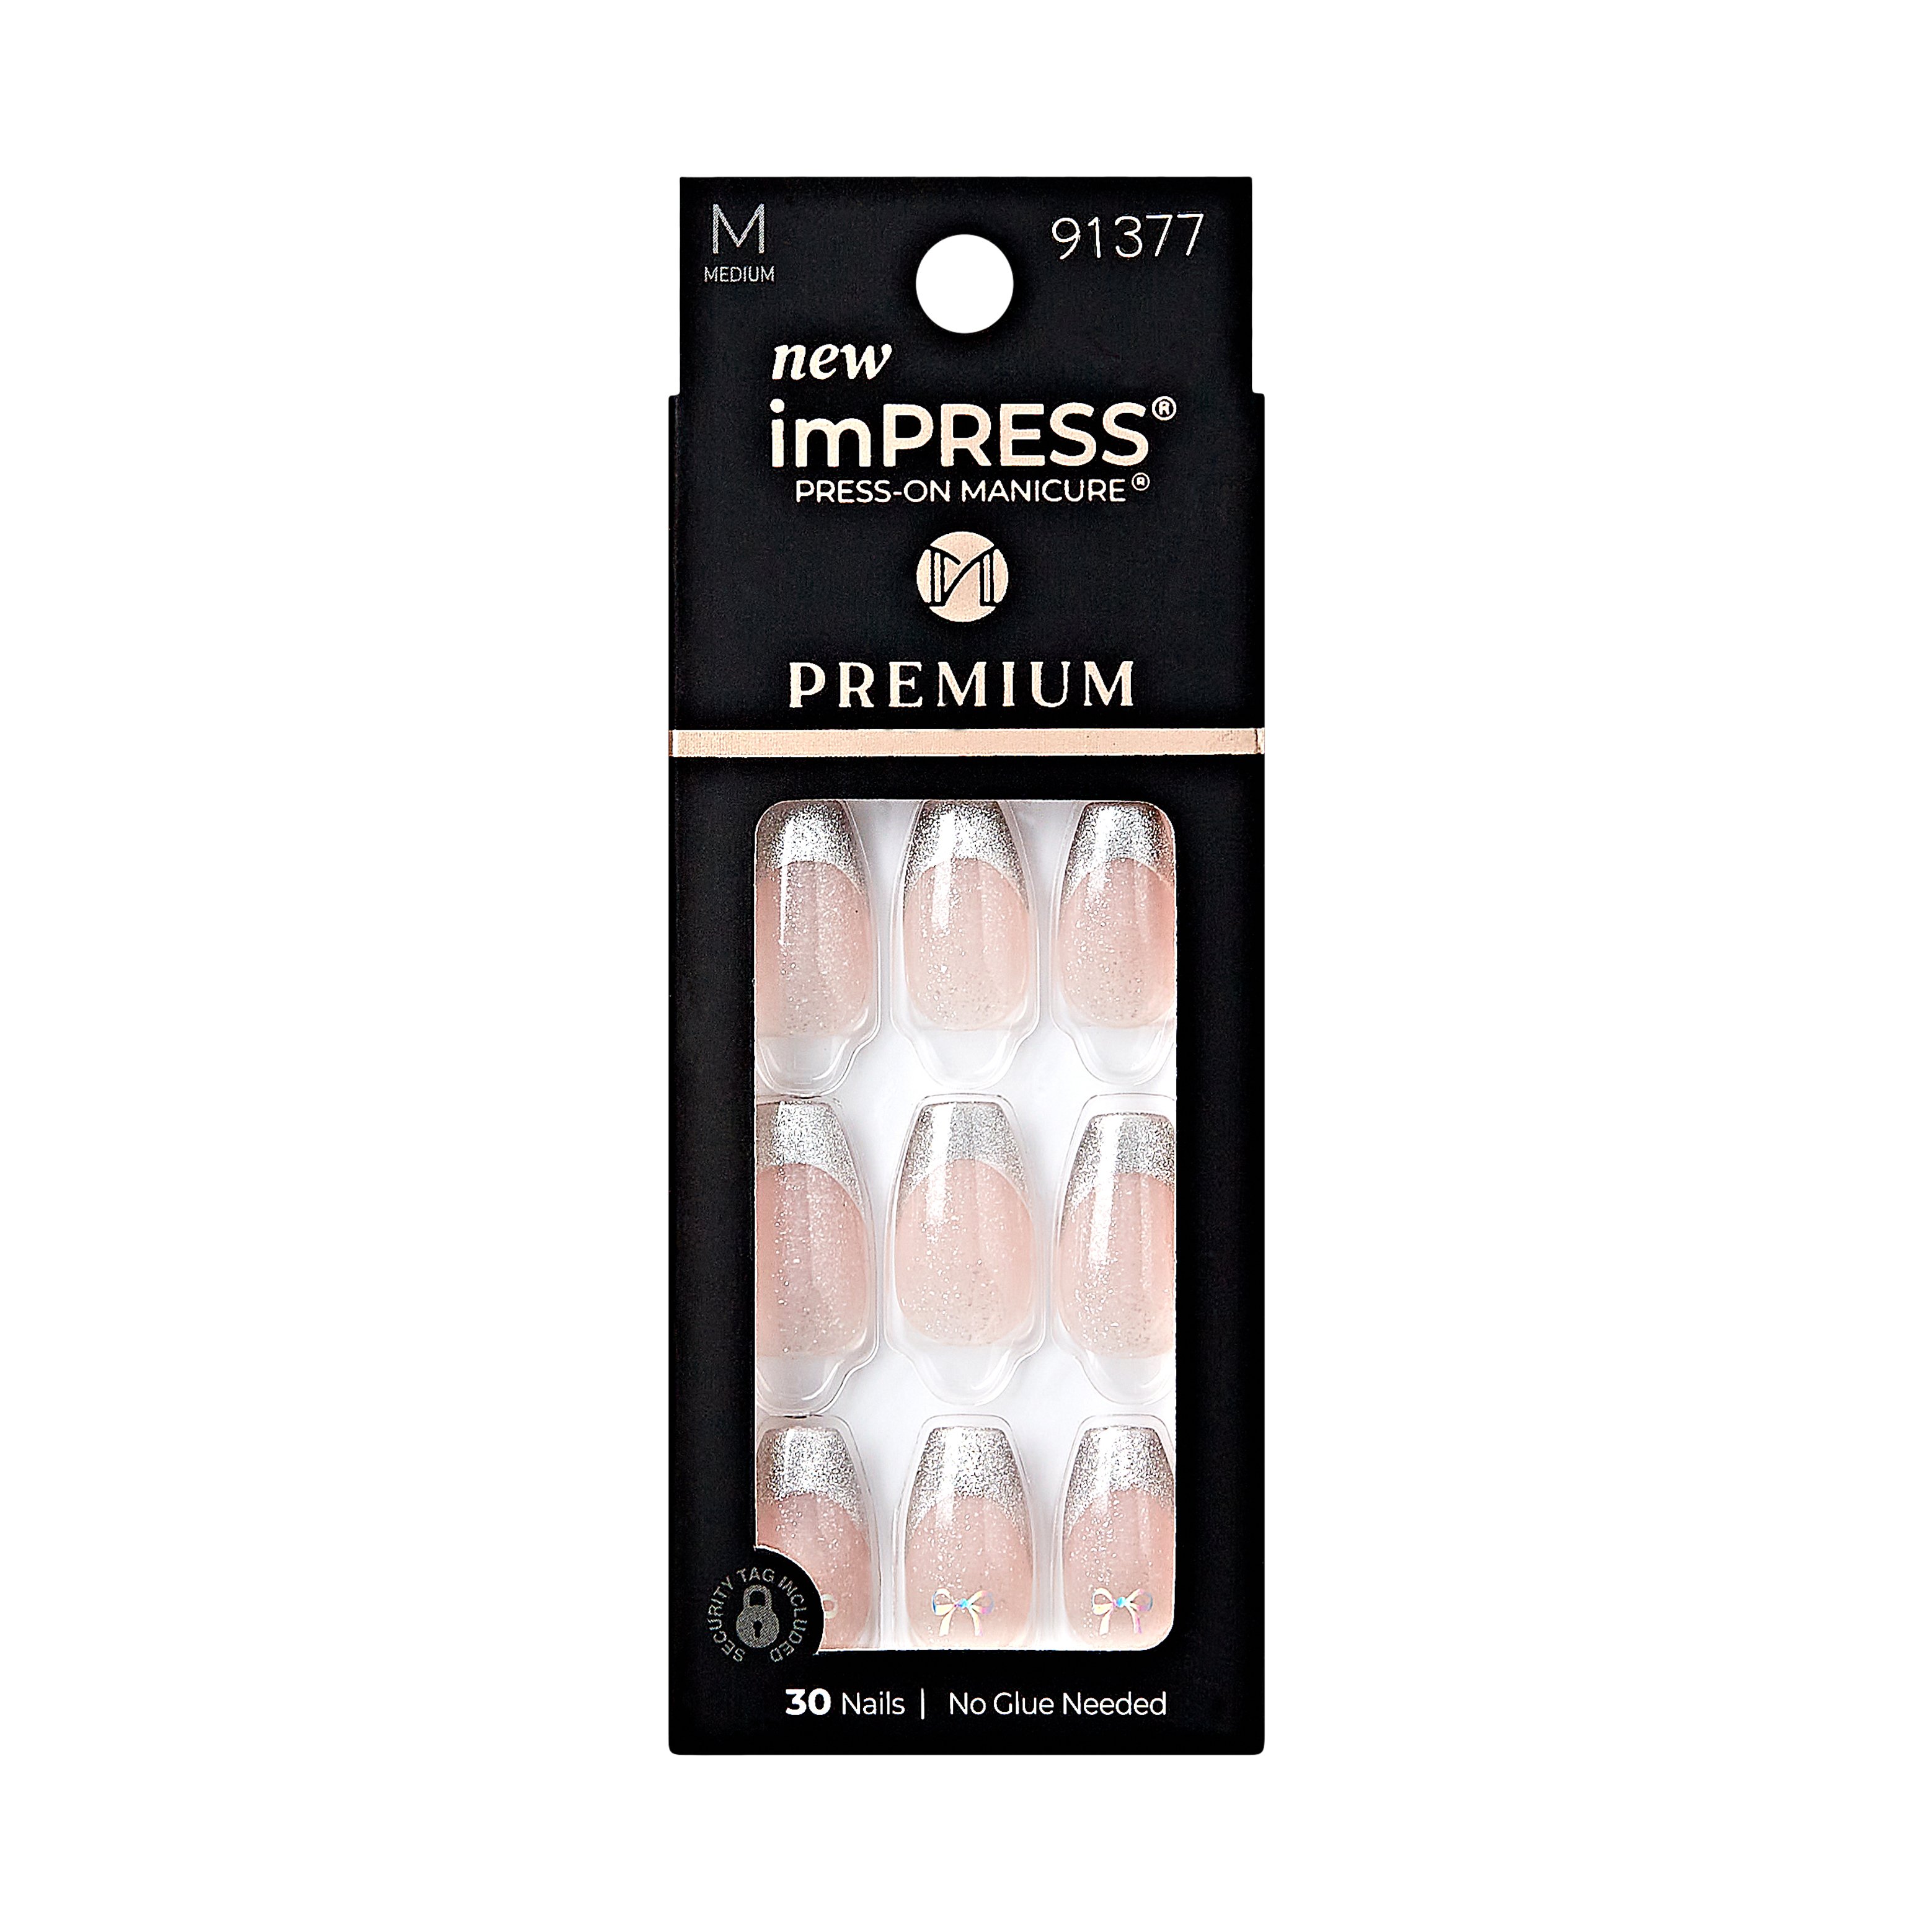 KISS imPRESS Press-On Premium Manicure - Memory Lane - Shop Nail Sets ...